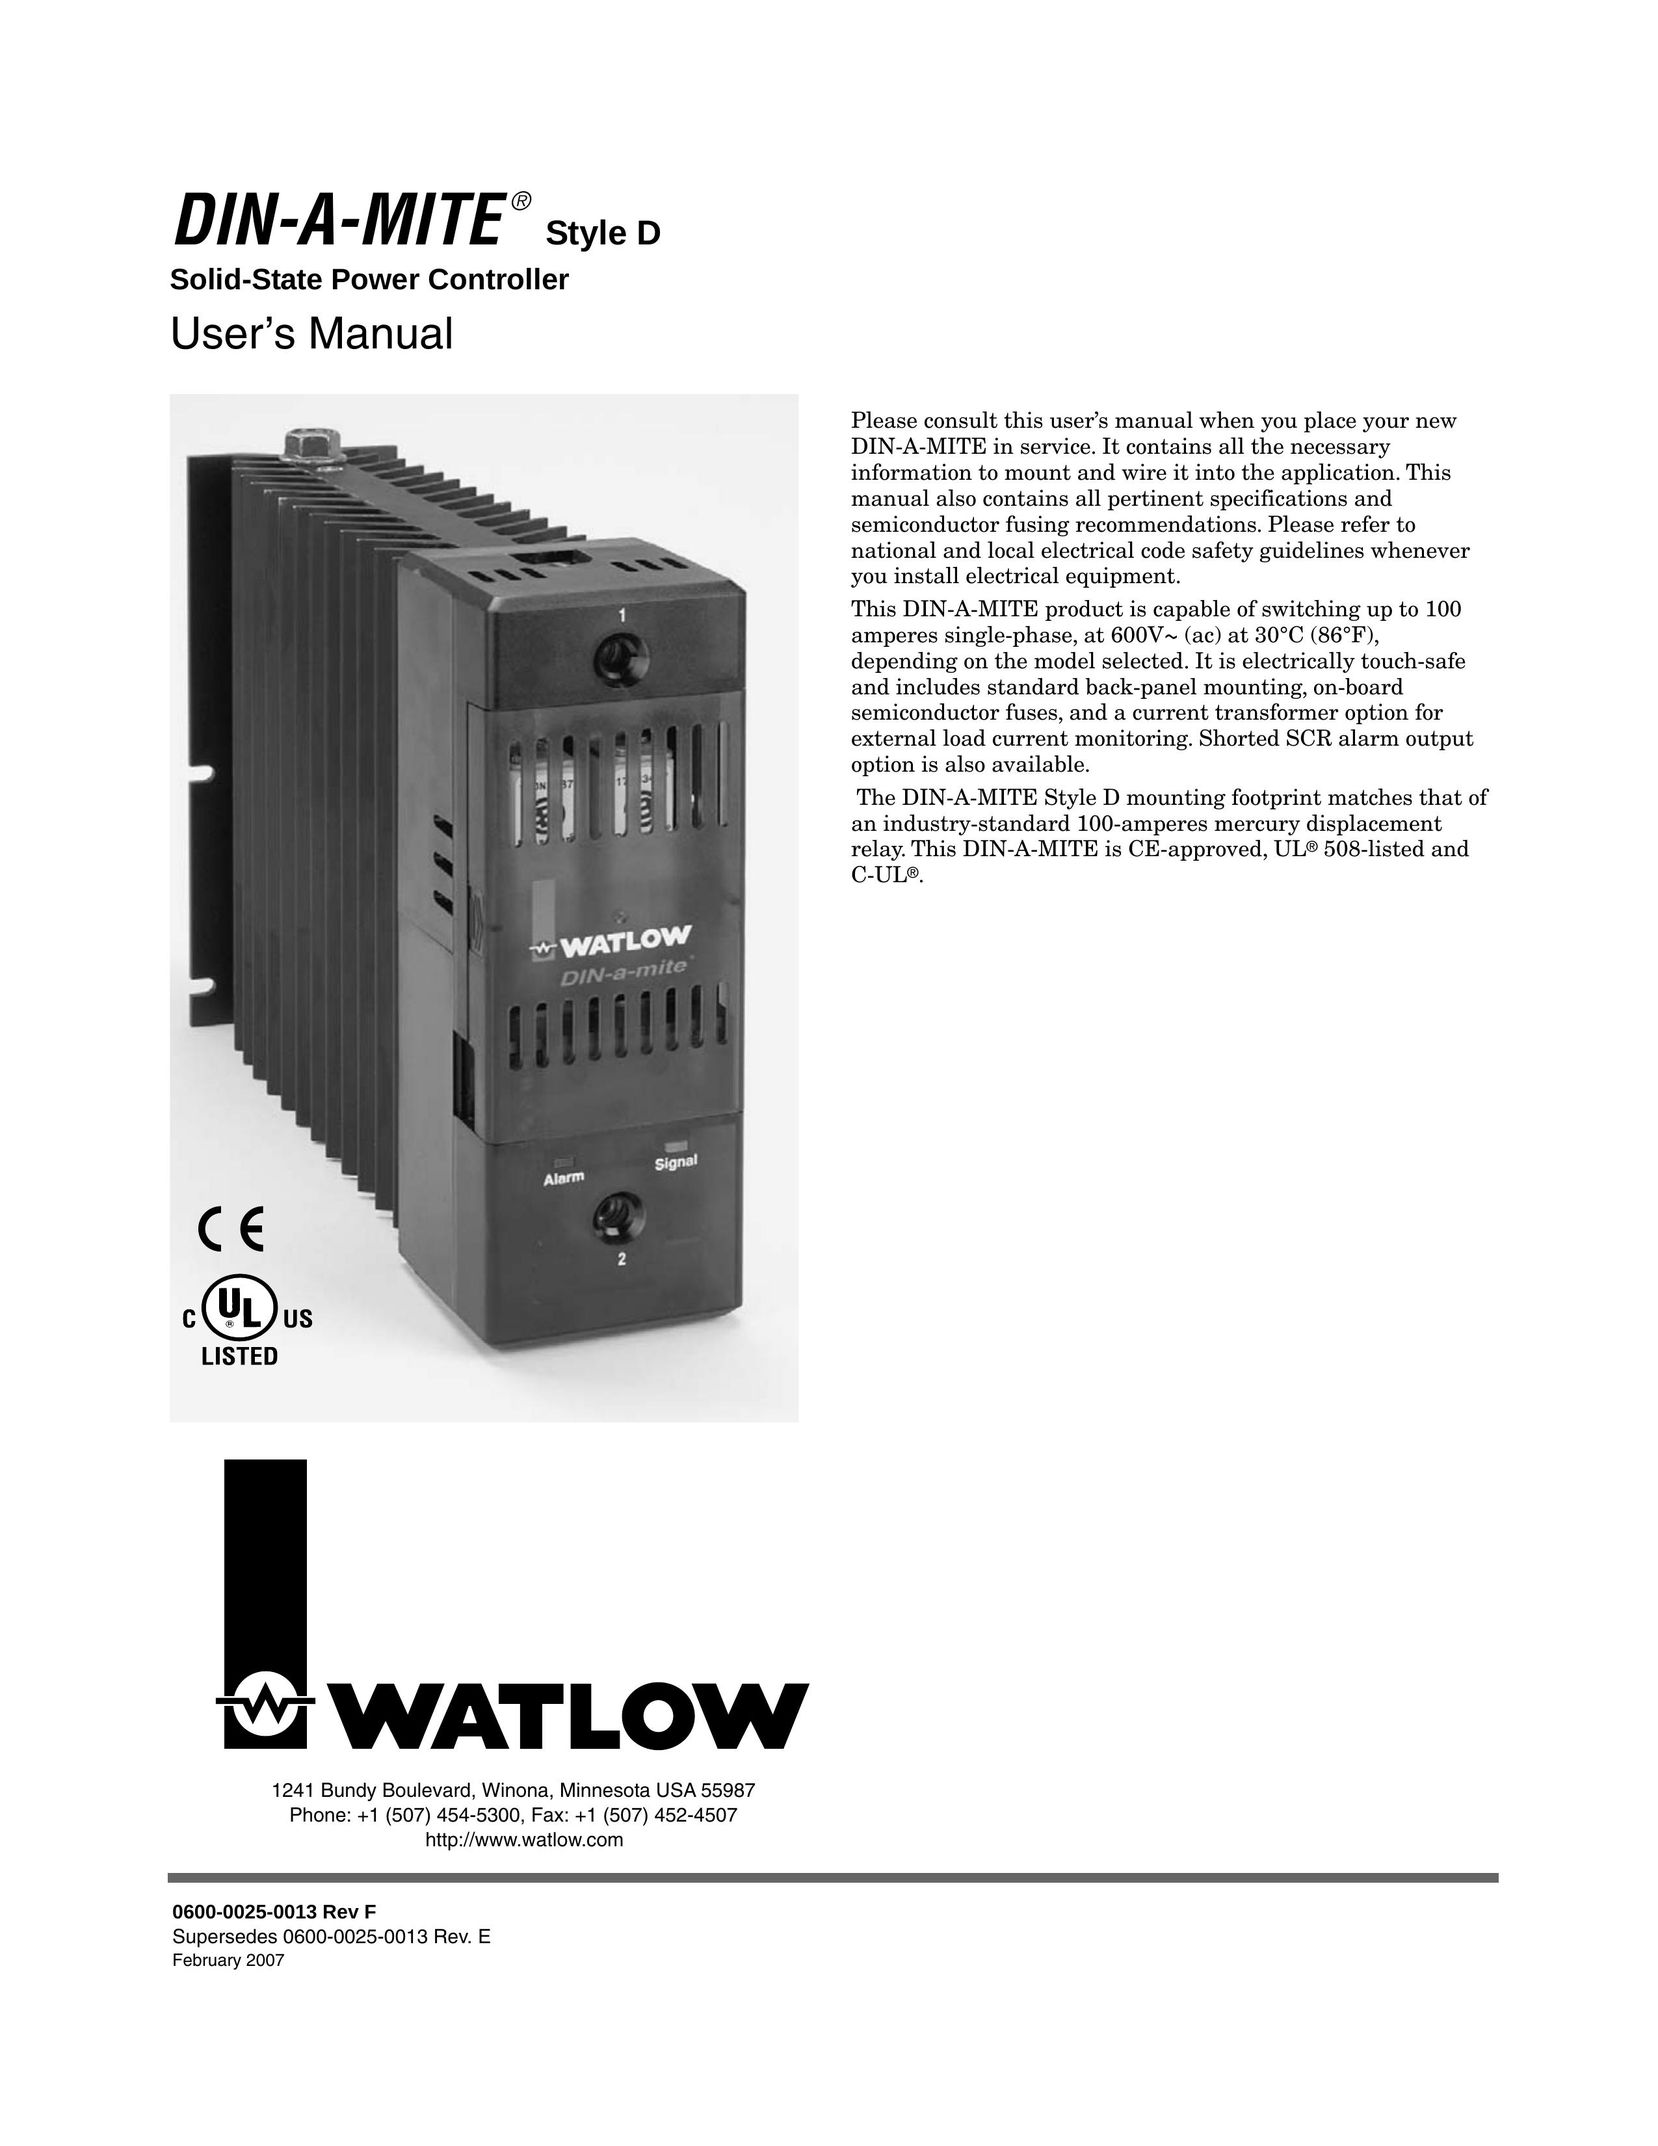 Watlow Electric Style D Caulking Gun User Manual